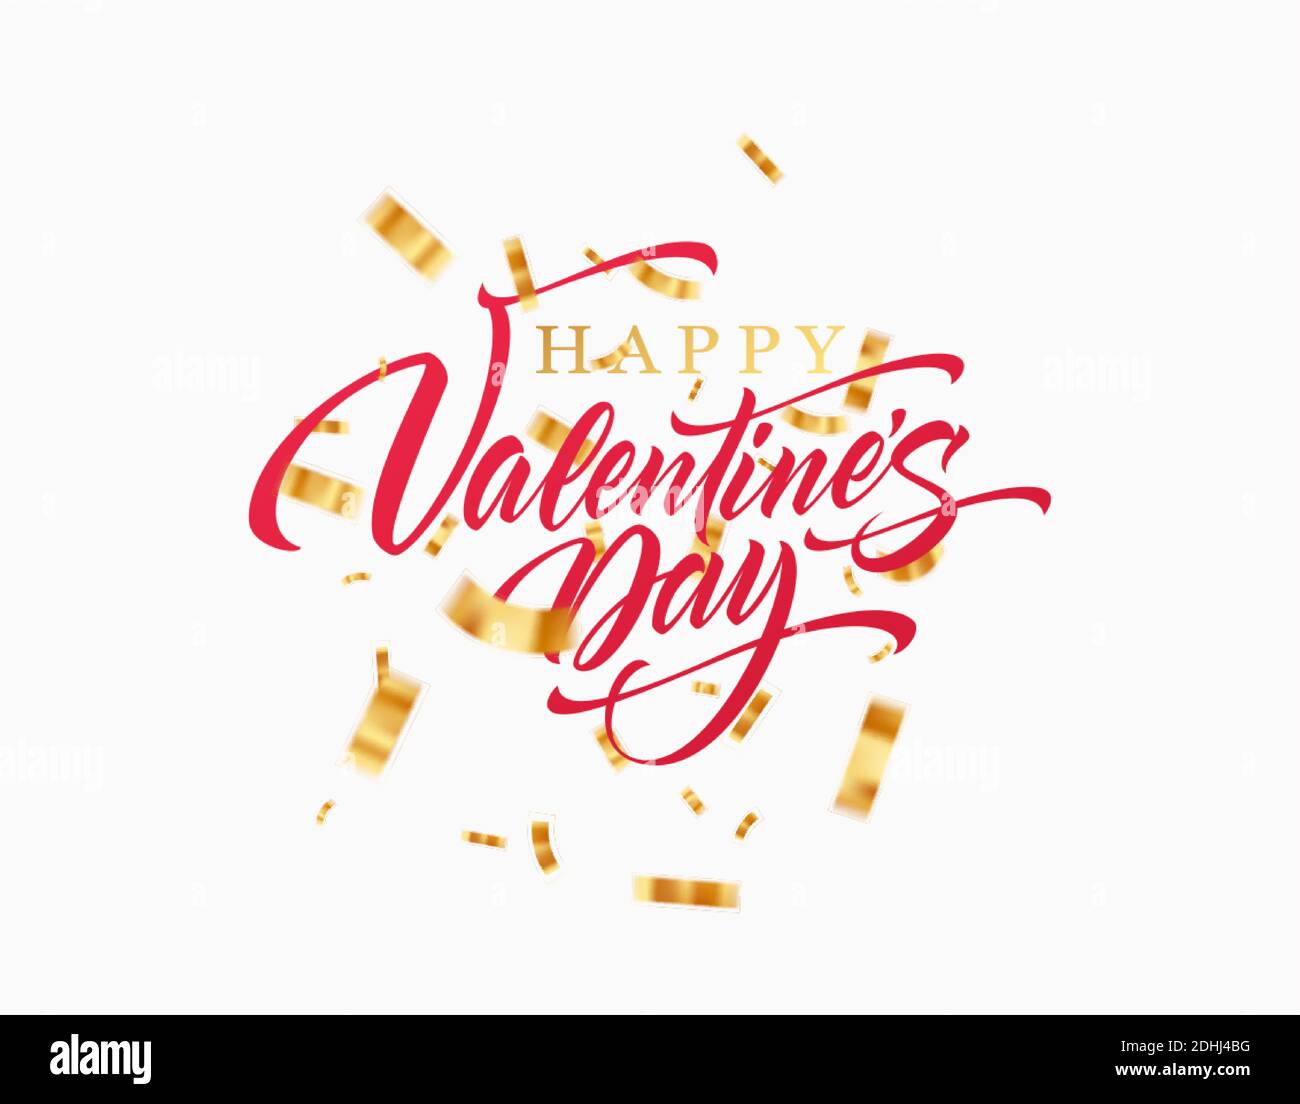 Une bonne Saint Valentin avec des confettis dorés scintillants isolés Arrière-plan blanc.illustration vectorielle Illustration de Vecteur